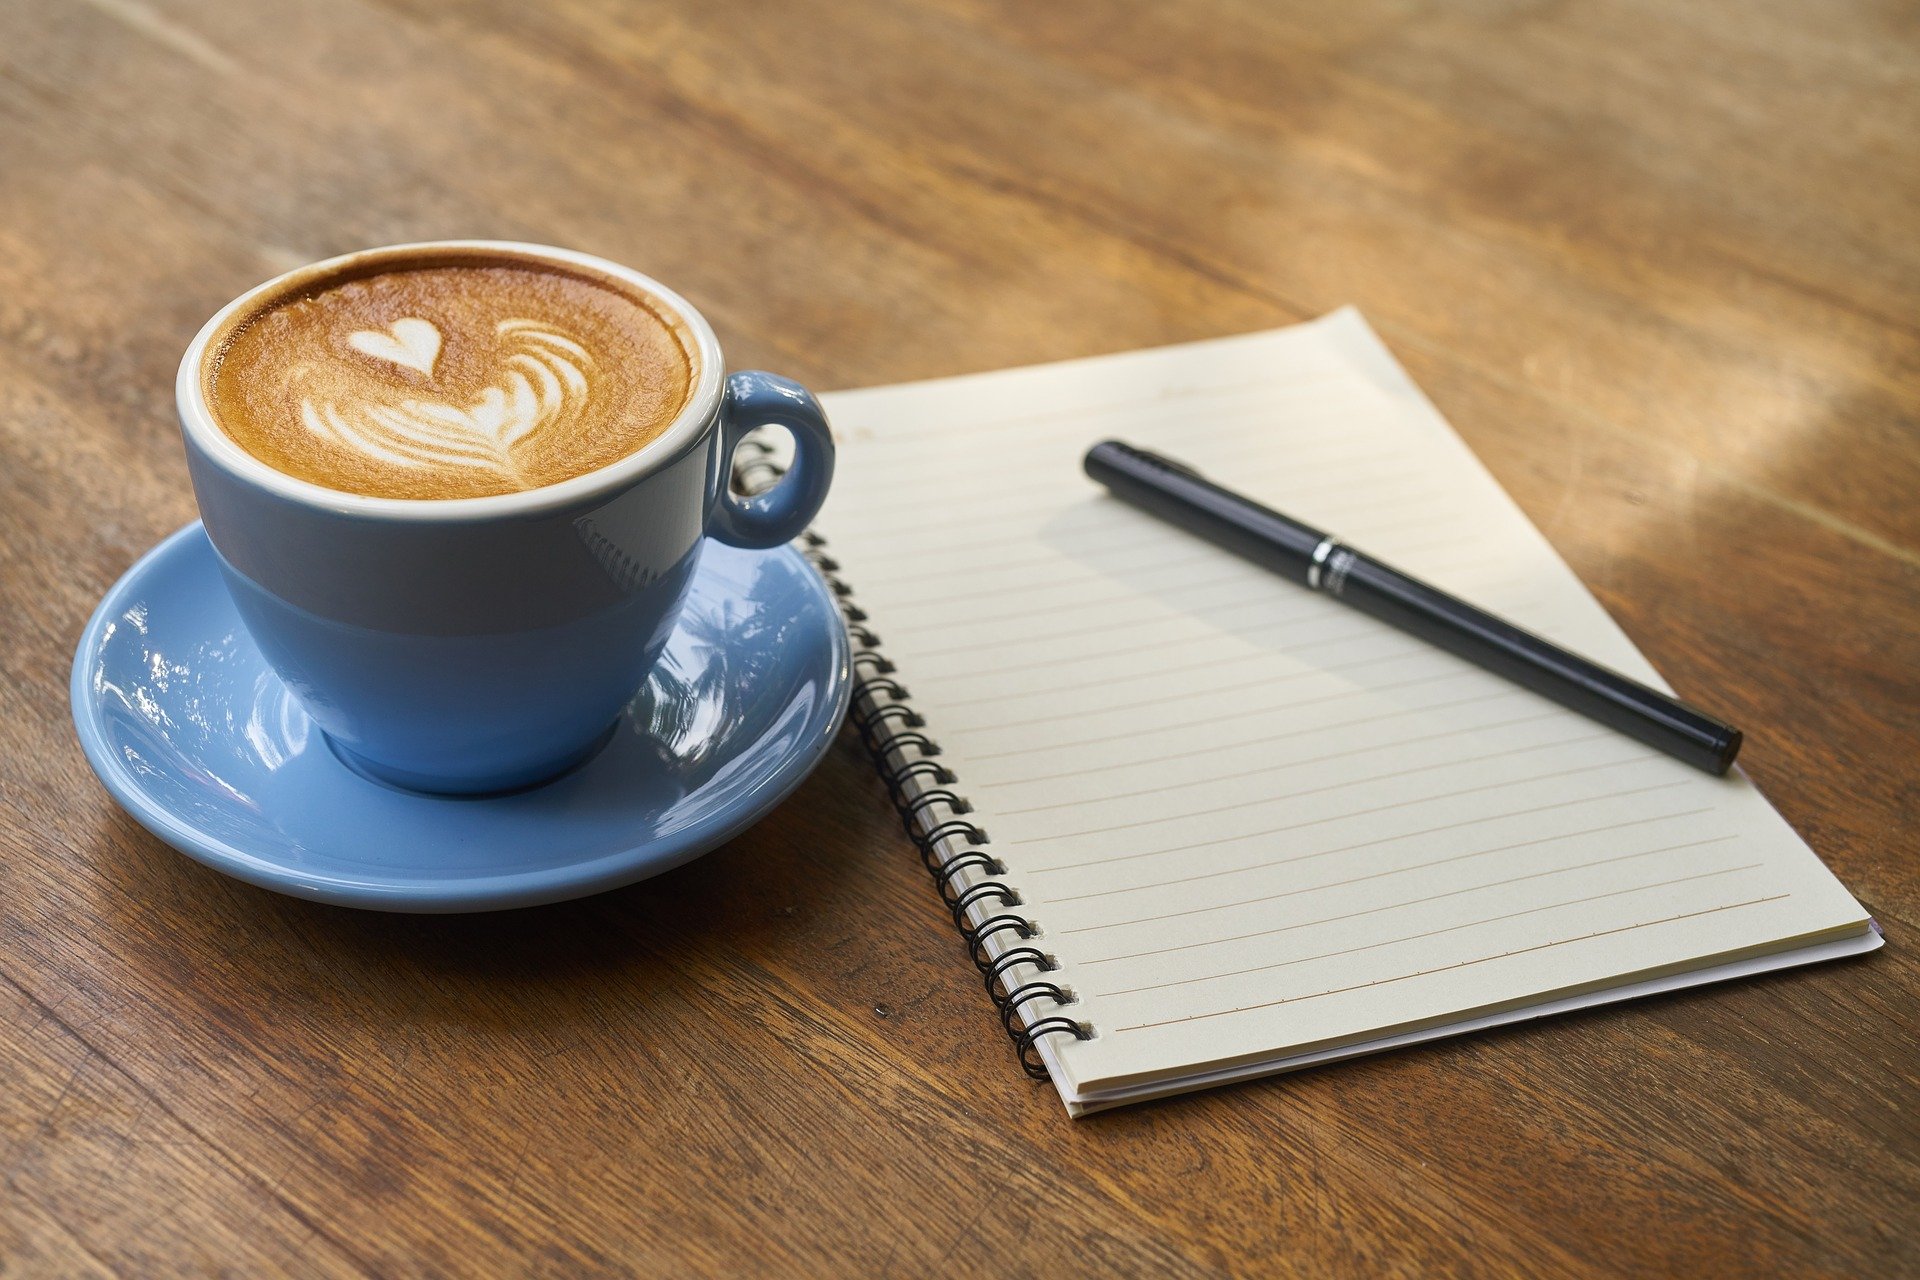 coffee, notebook, pen